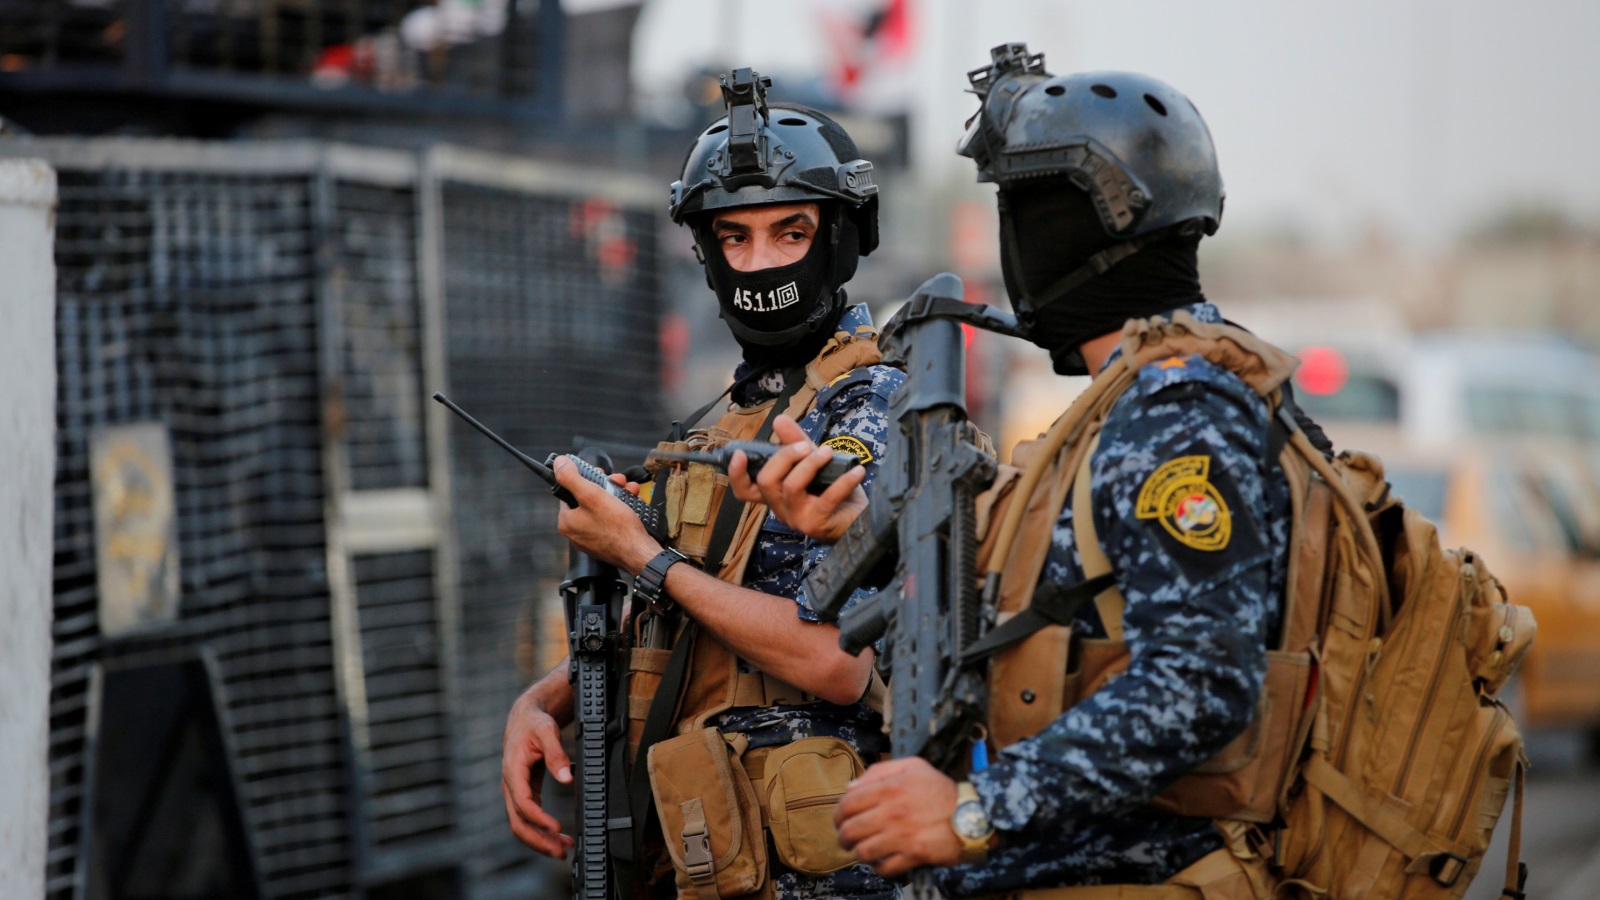 قيادة العمليات العسكرية في البصرة حصلت على موافقات قضائية لاعتقال المتظاهرين الذي يتسببون في قطع الطرق (رويترز)